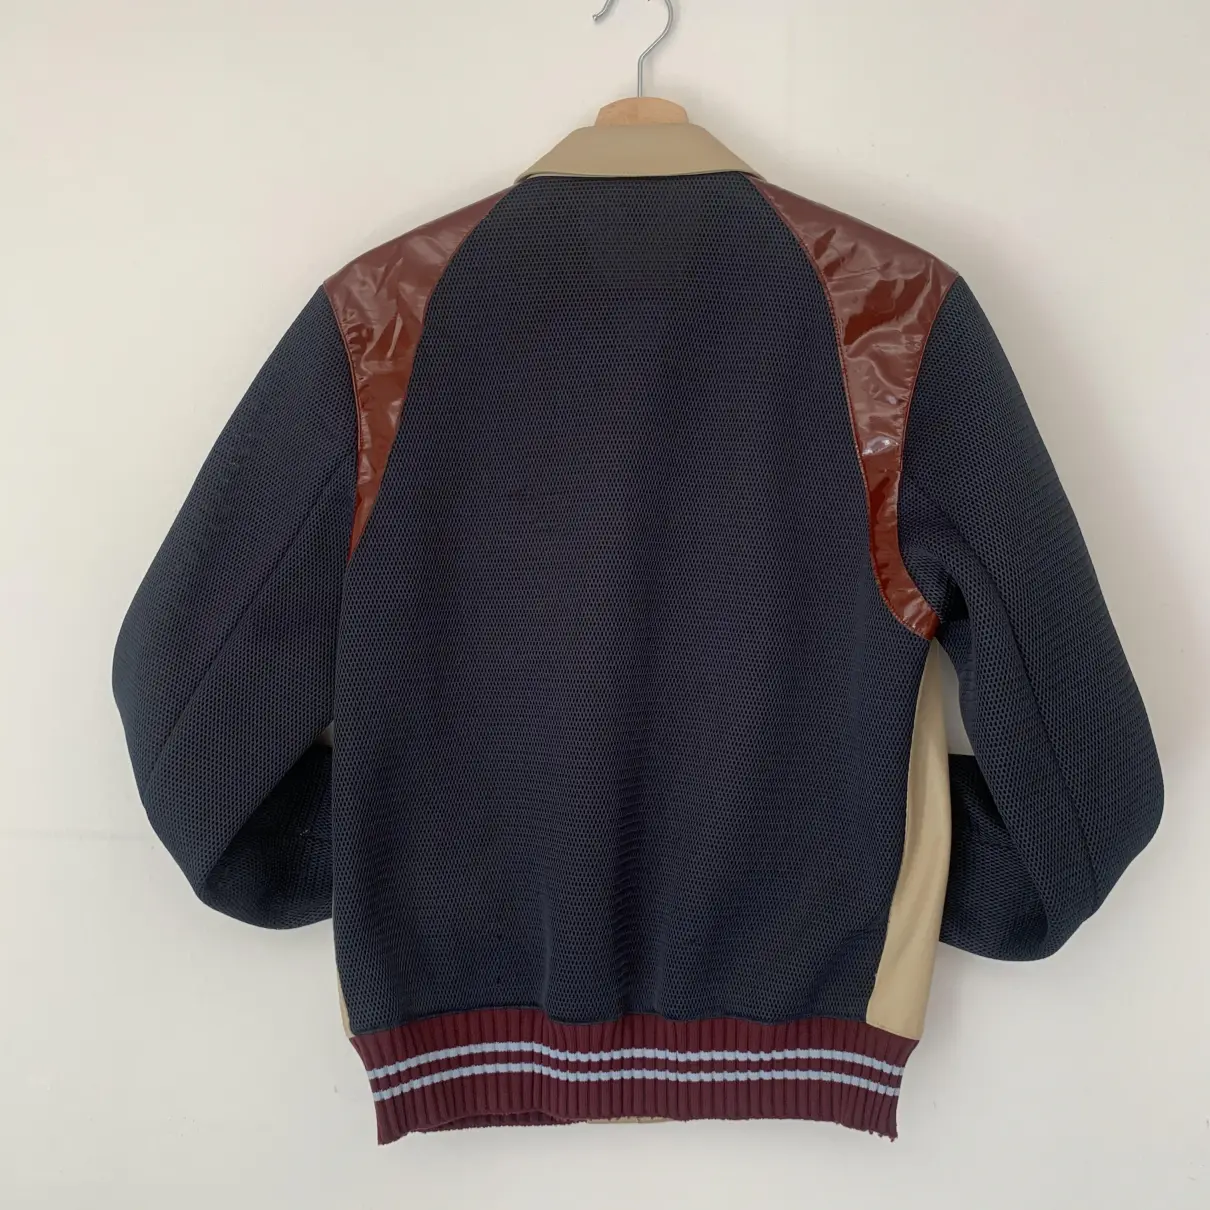 Buy Miu Miu Leather jacket online - Vintage